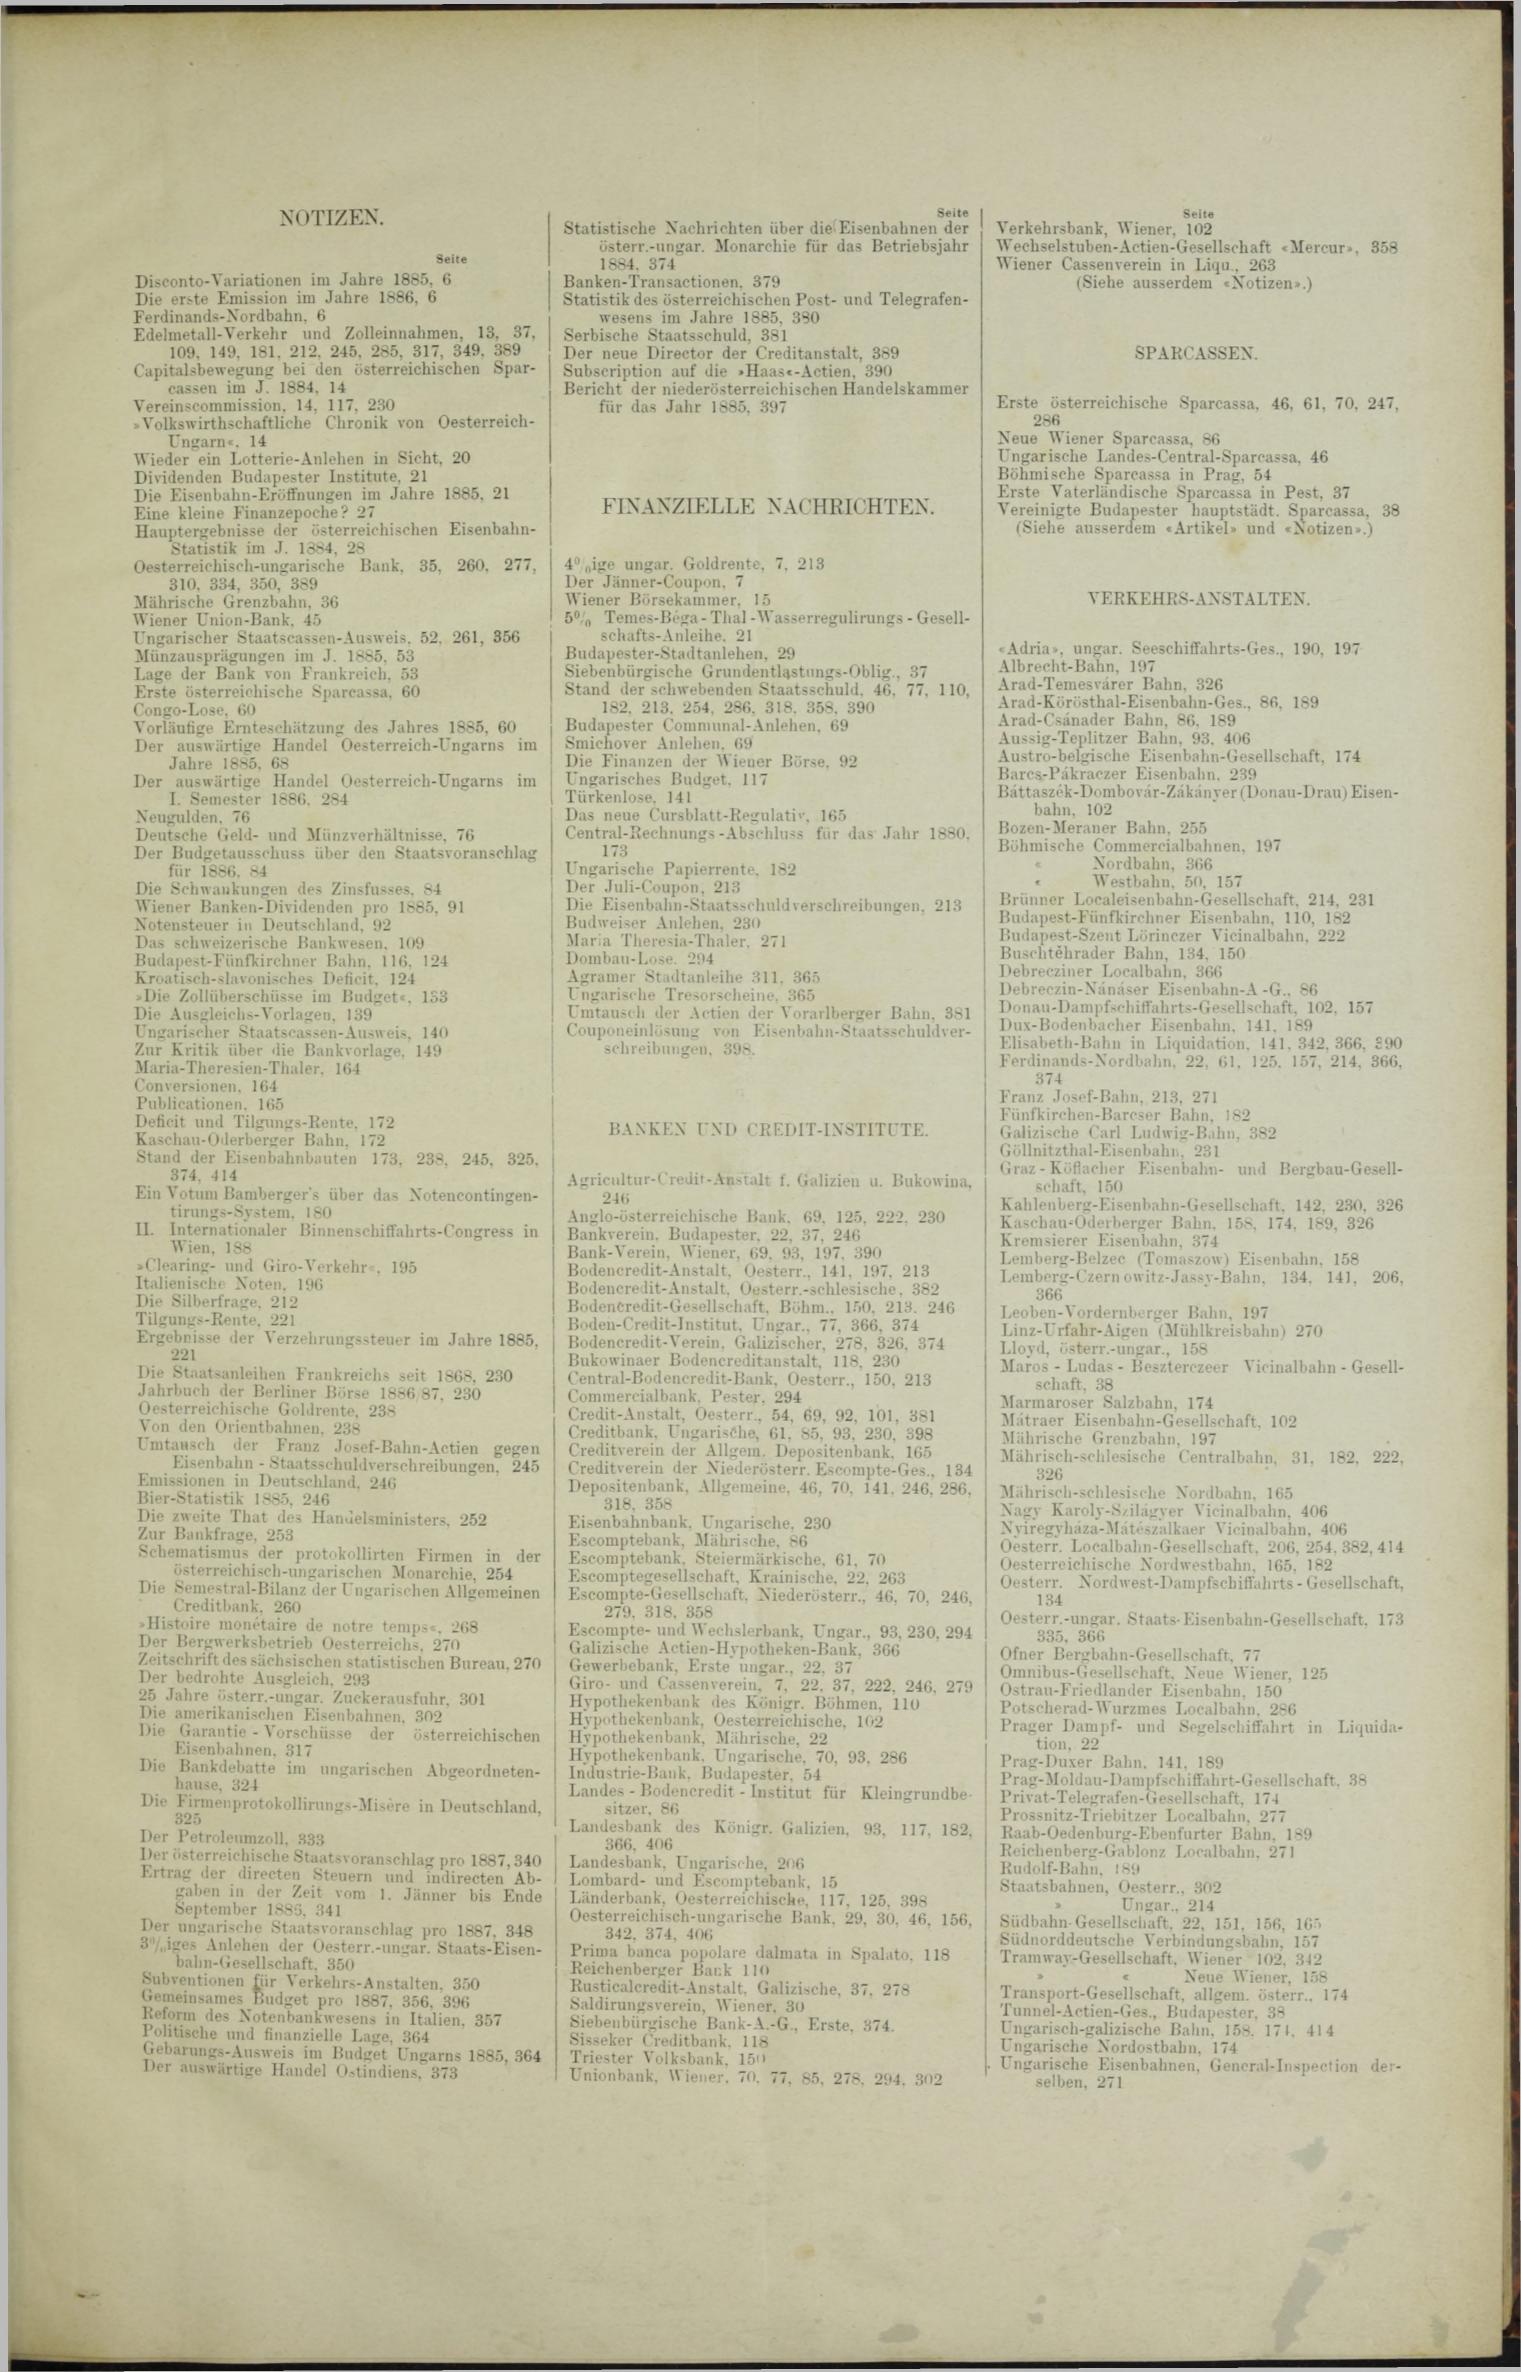 Der Tresor 22.07.1886 - Seite 11